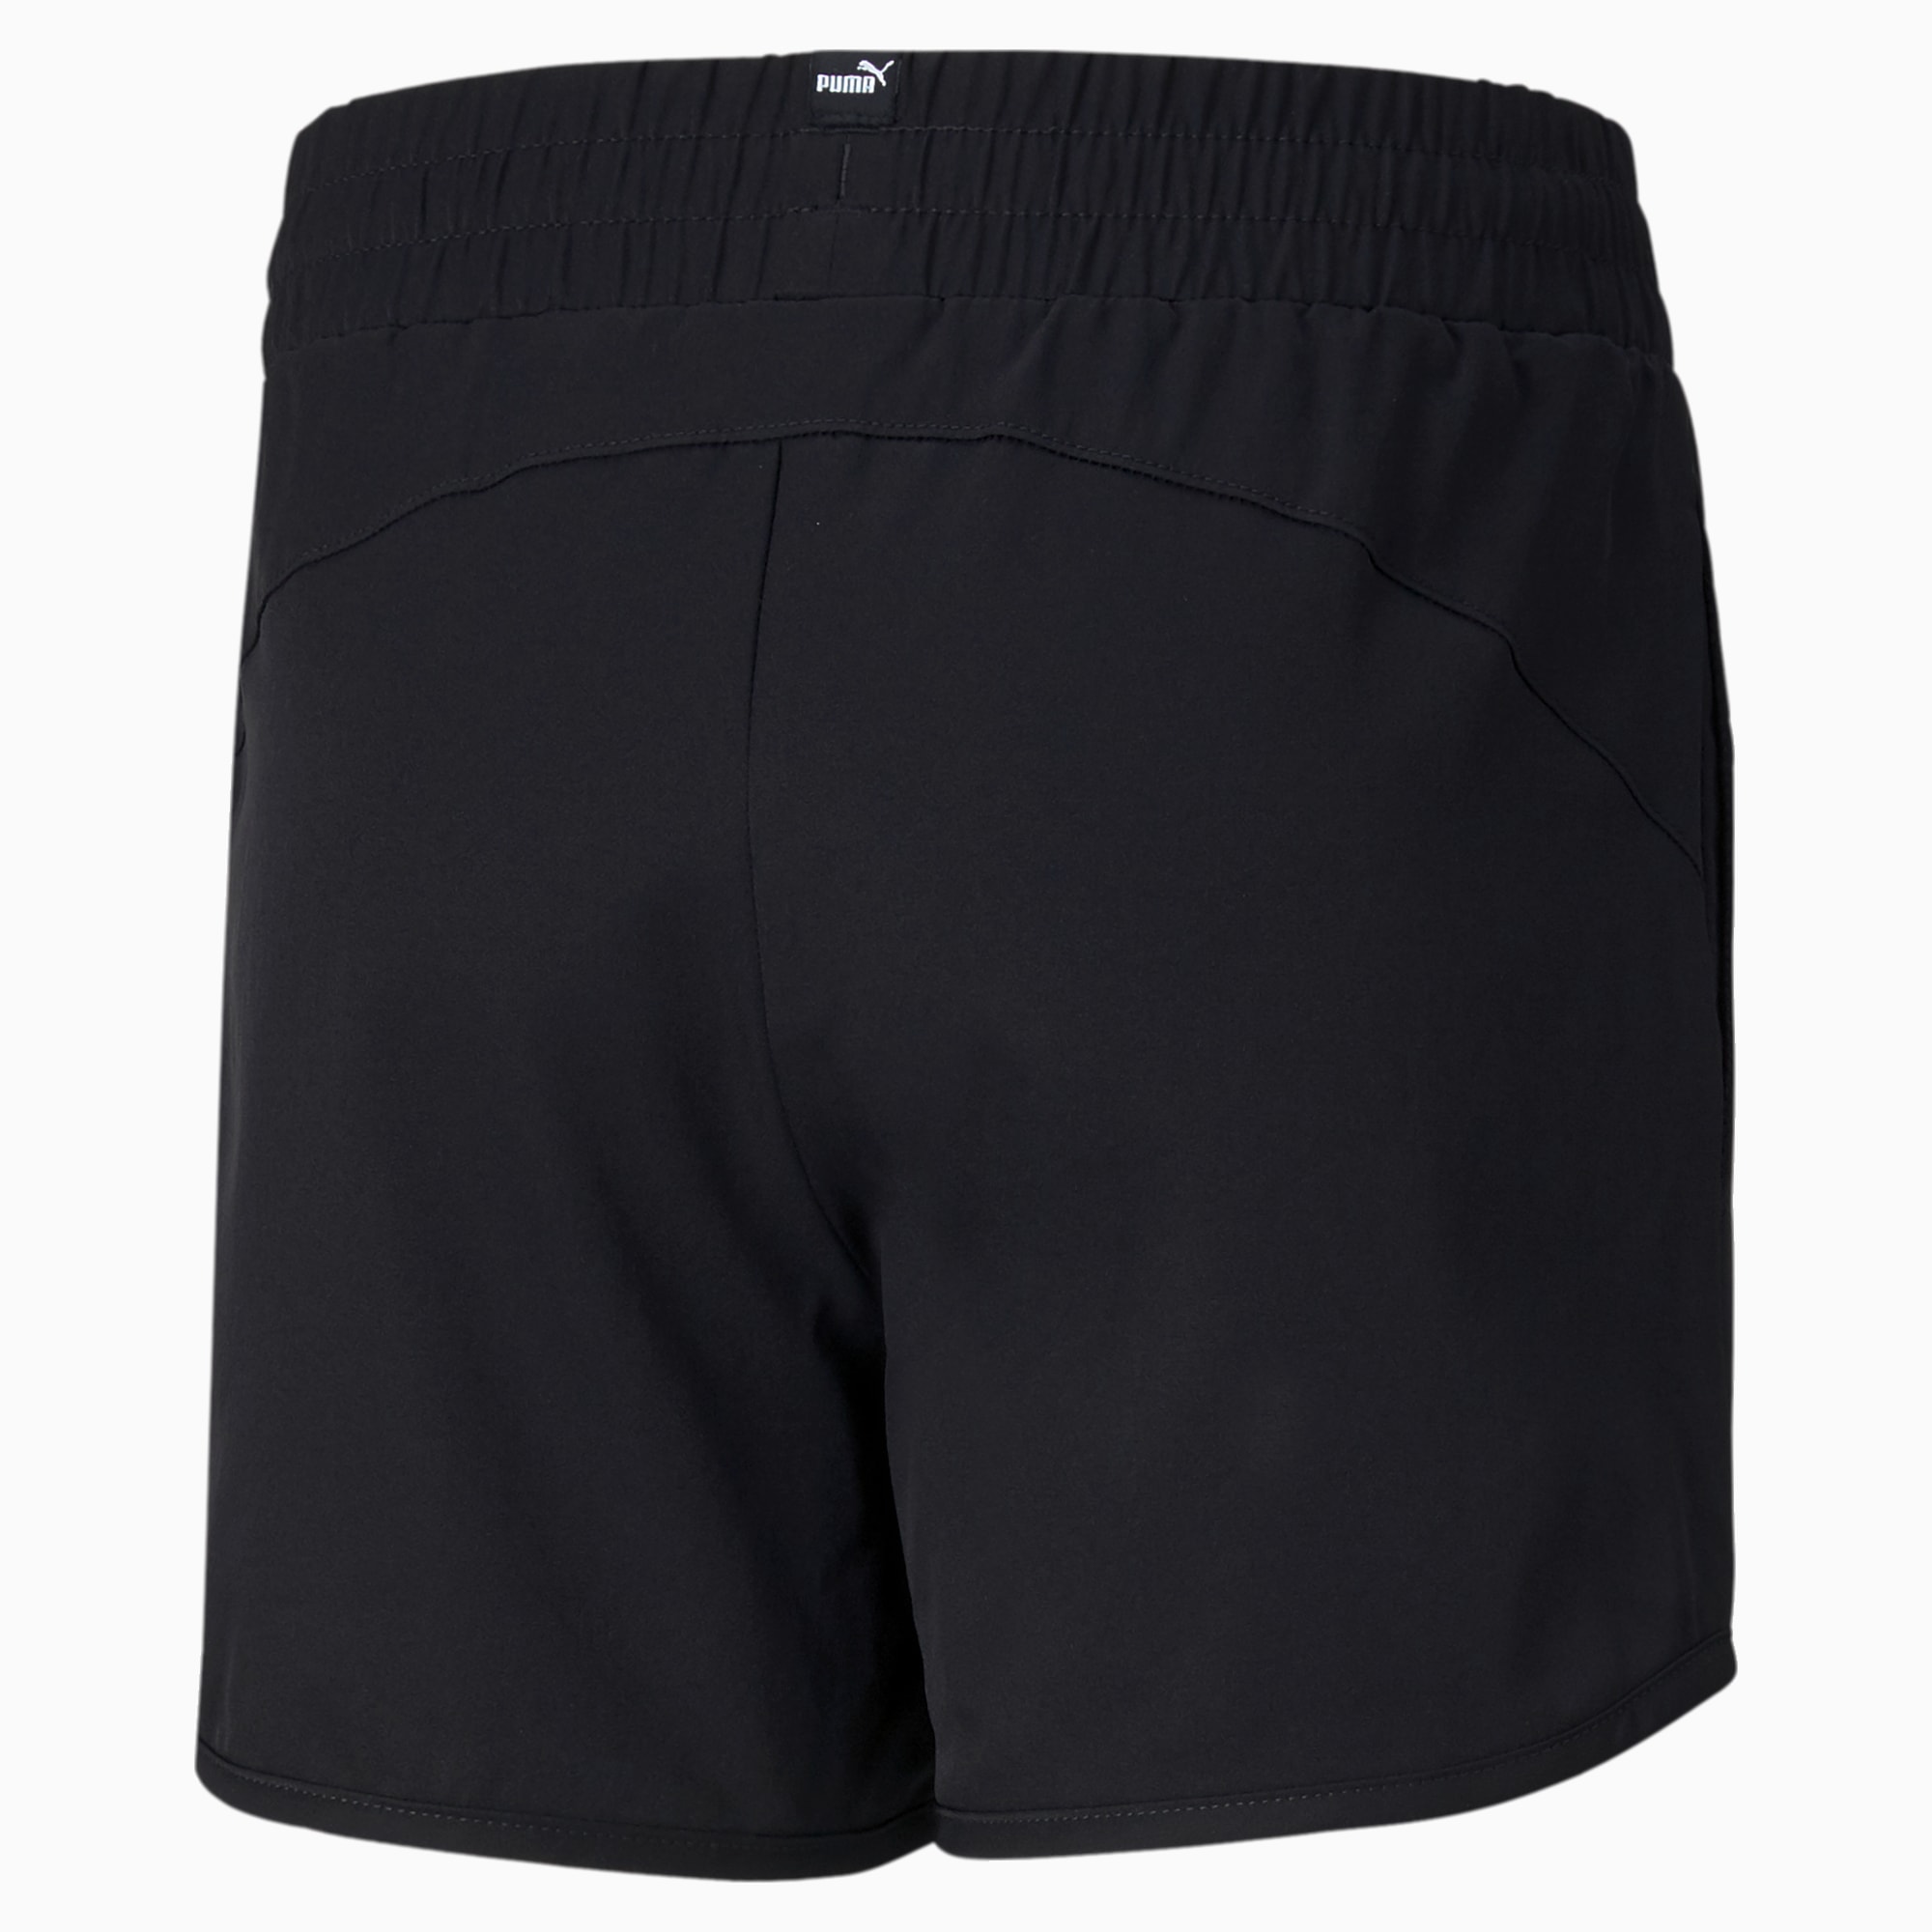 PUMA Active Youth Shorts, Black, Size 92, Clothing